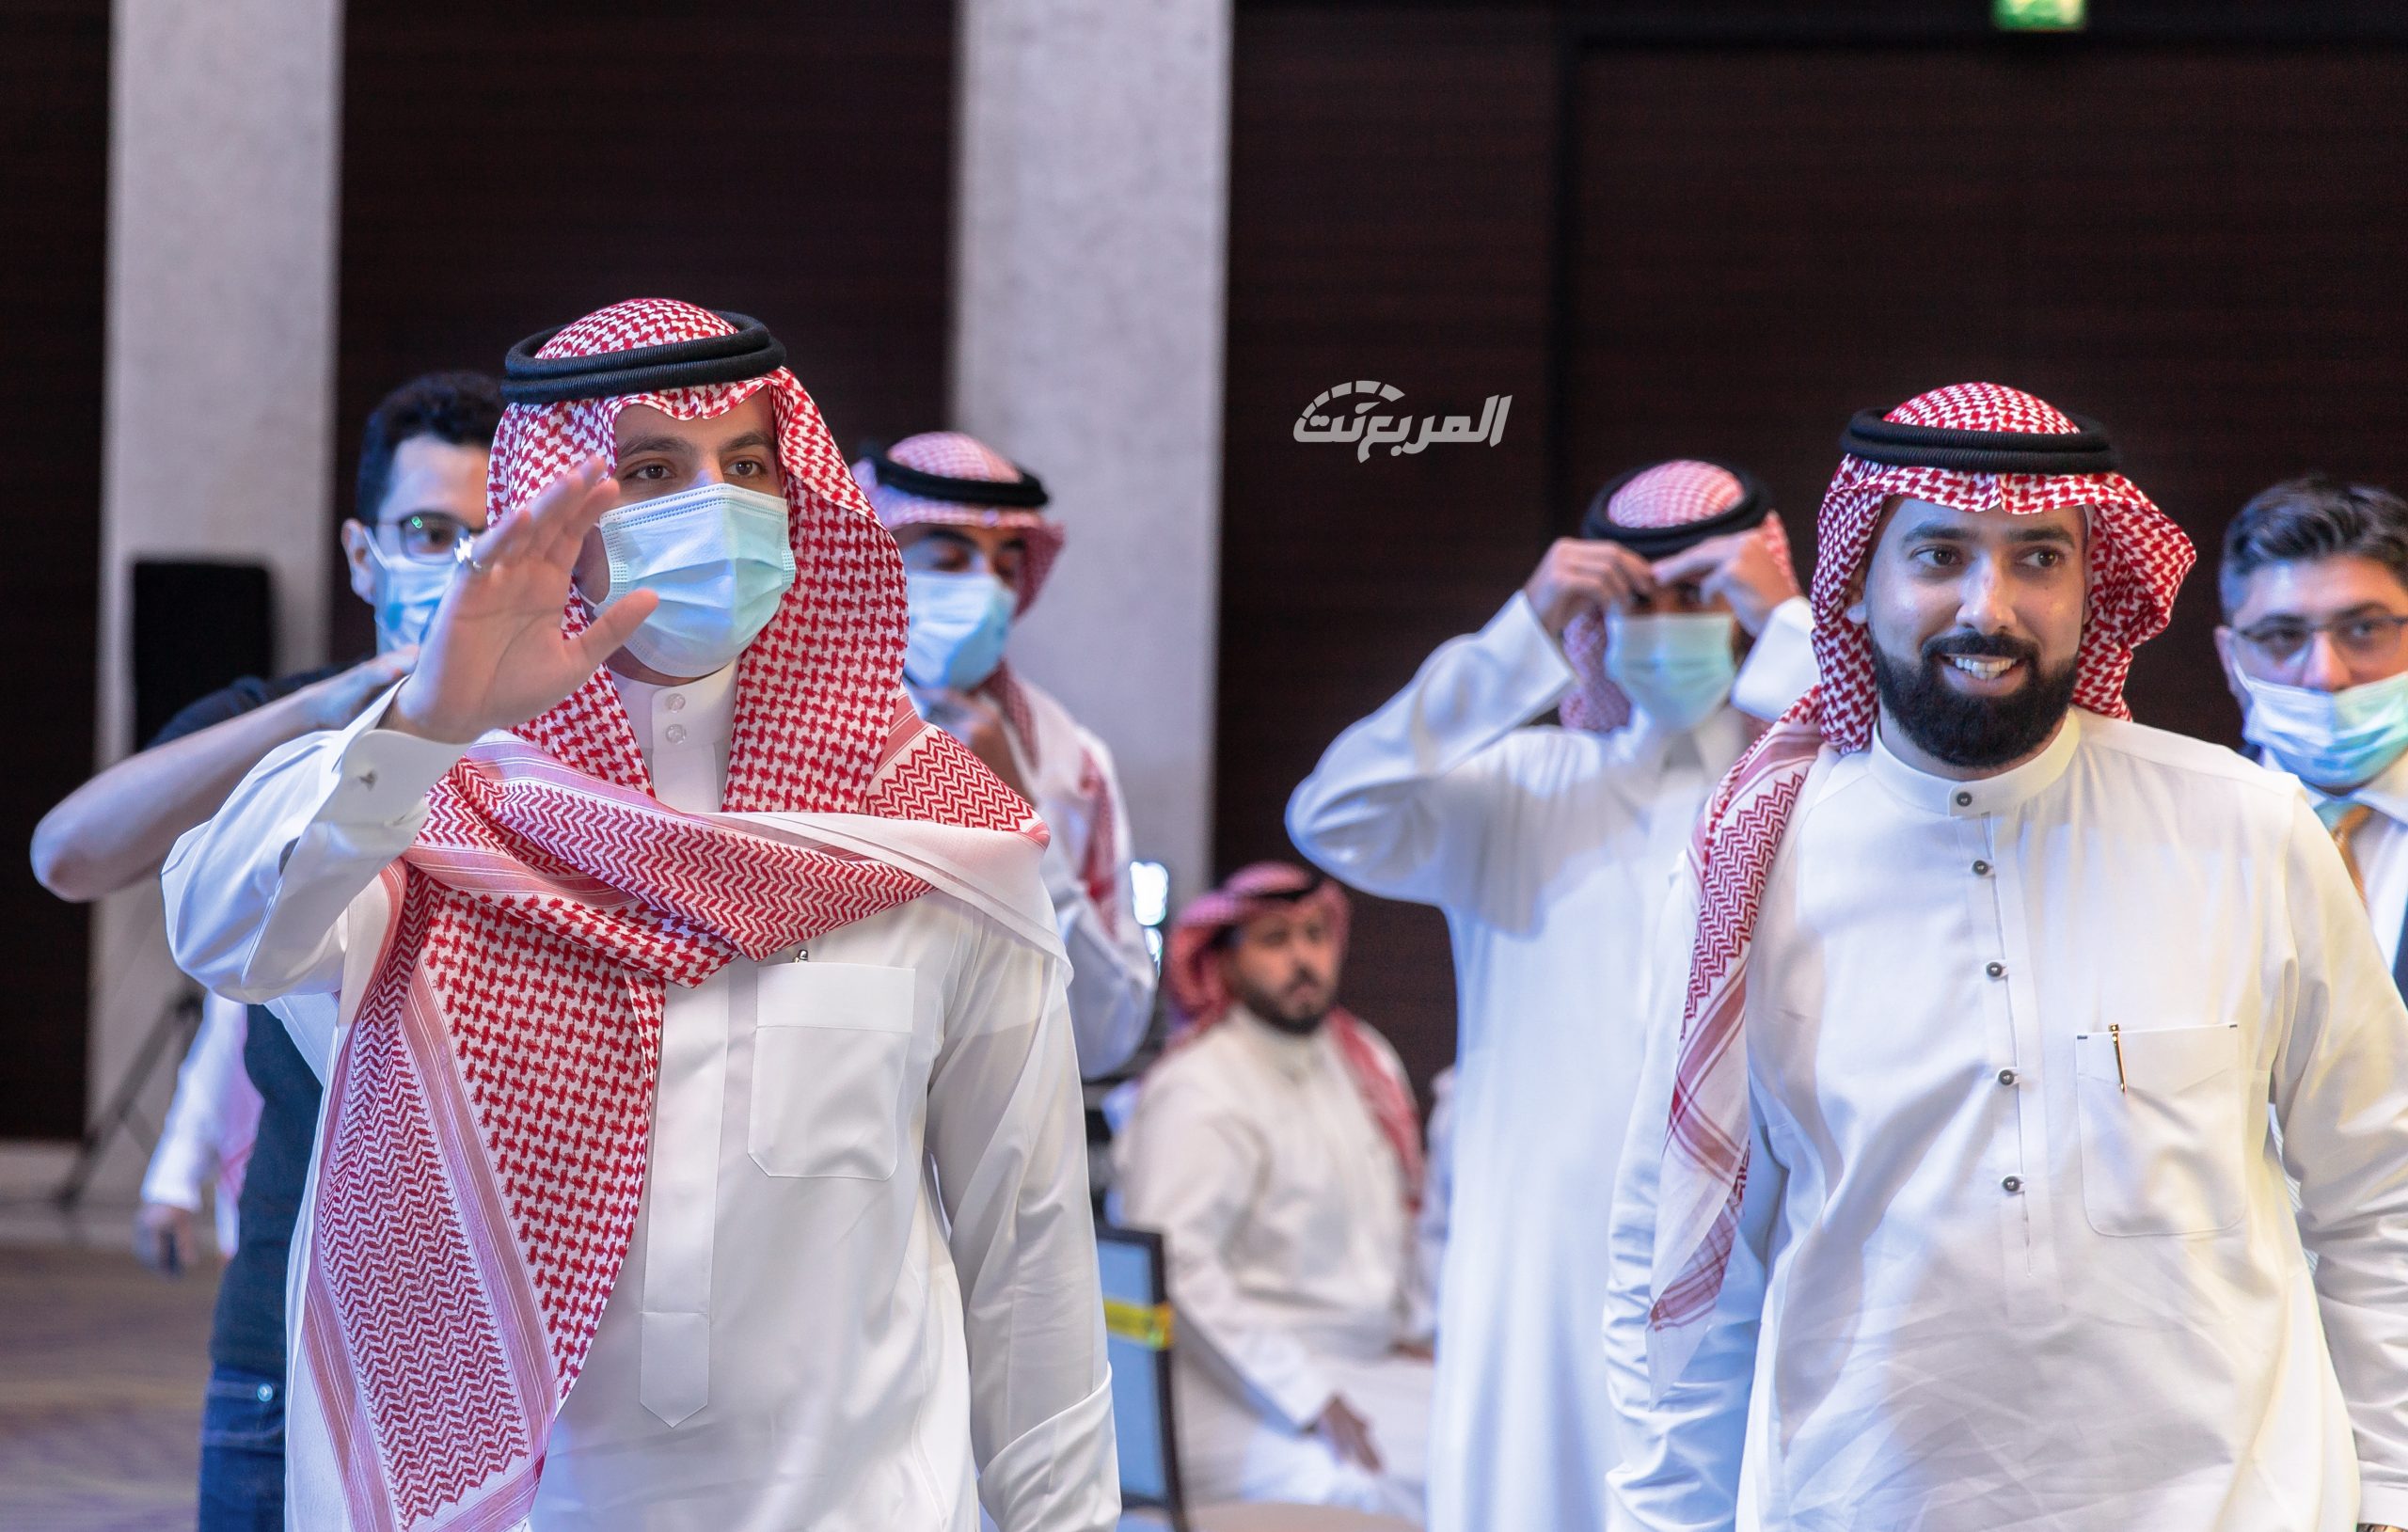 صور من حفل تدشين هوية الوفاق الجديدة ( يلو ) 25